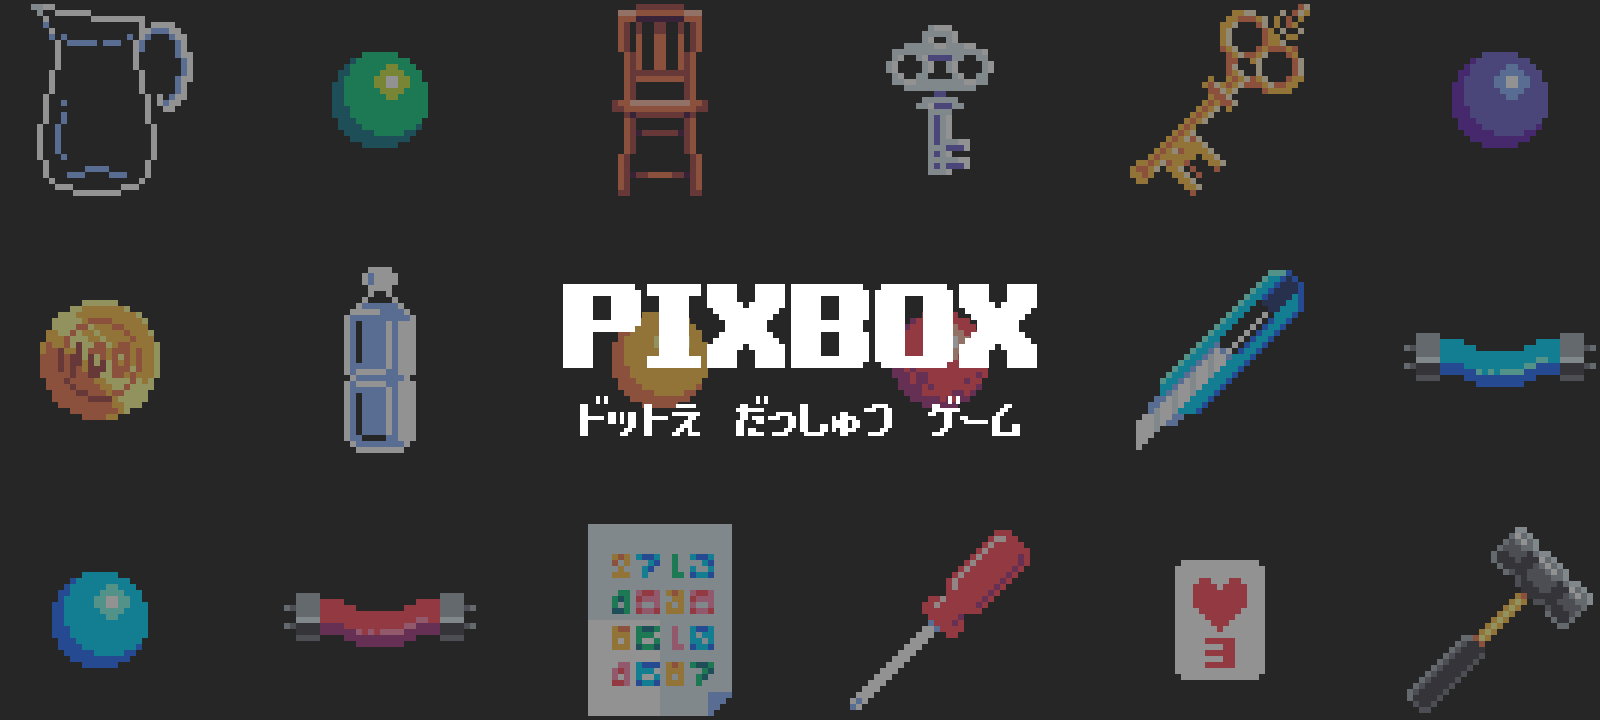 ドット絵の脱出ゲーム Pixbox をリリースしました Ryo6 Design Development